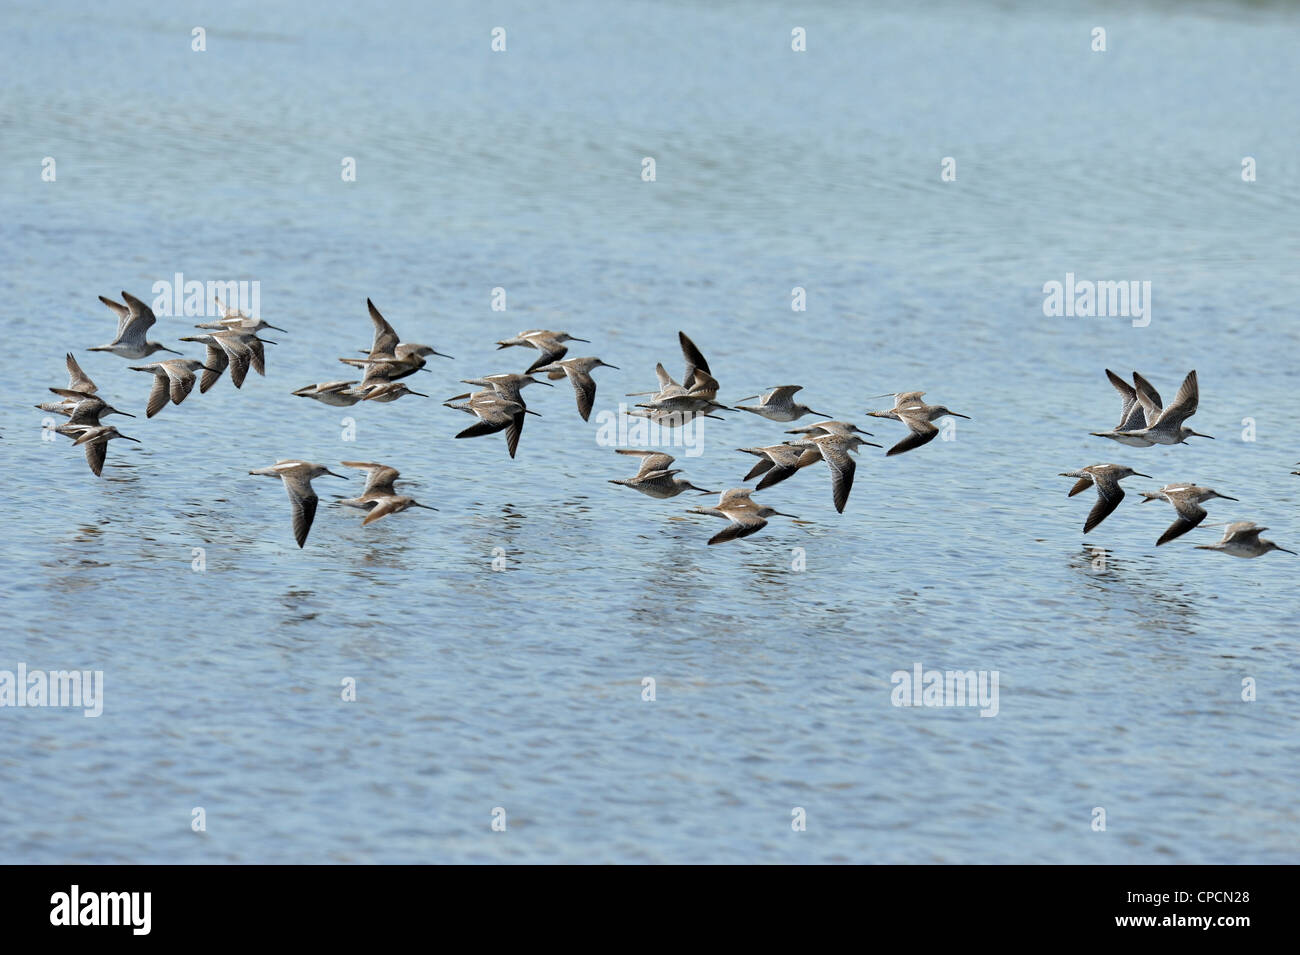 Short-billed Dowitcher (Limnodromus griseus) Flock in flight, Ding Darling National Wildlife Refuge, Sanibel Island, Florida, USA Stock Photo